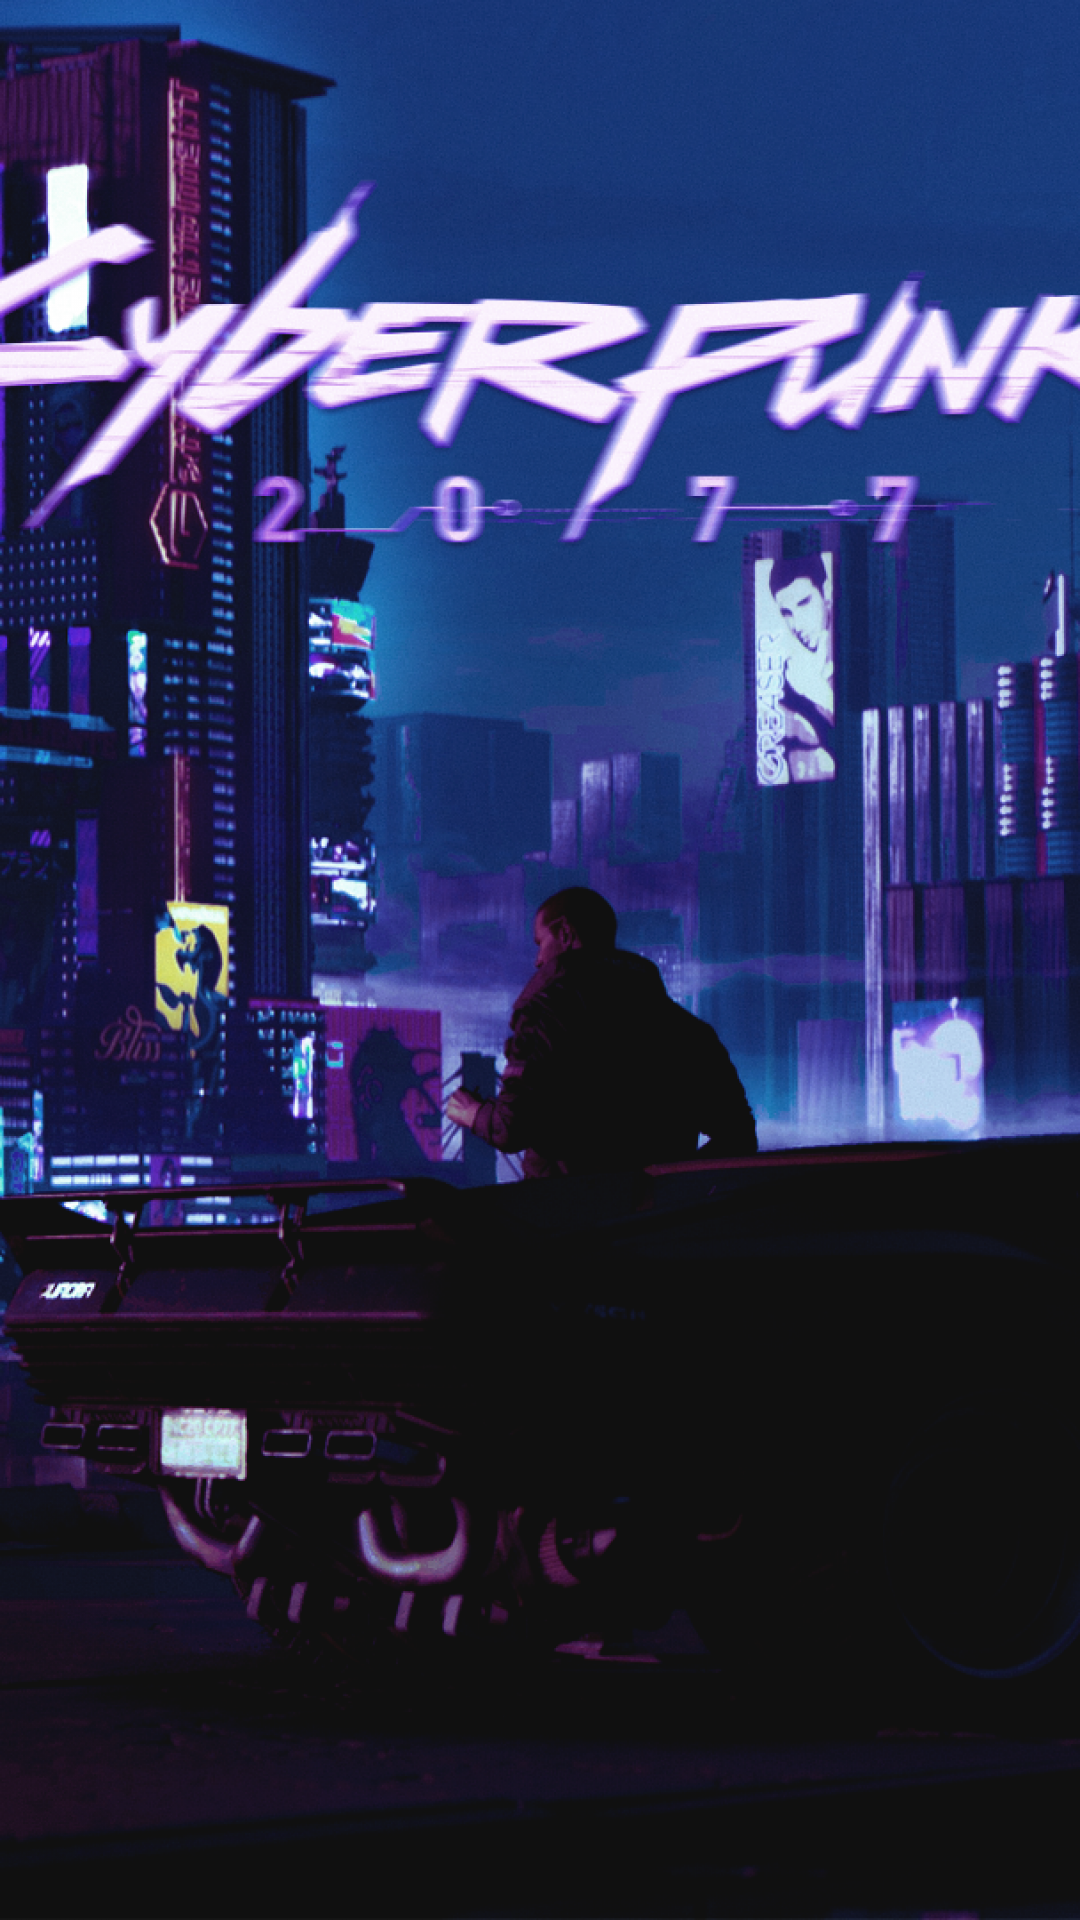 Cyberpunk 2077, Futuristic, Sci-fi, Retro - Cyberpunk 2077 Wallpaper Iphone X - HD Wallpaper 